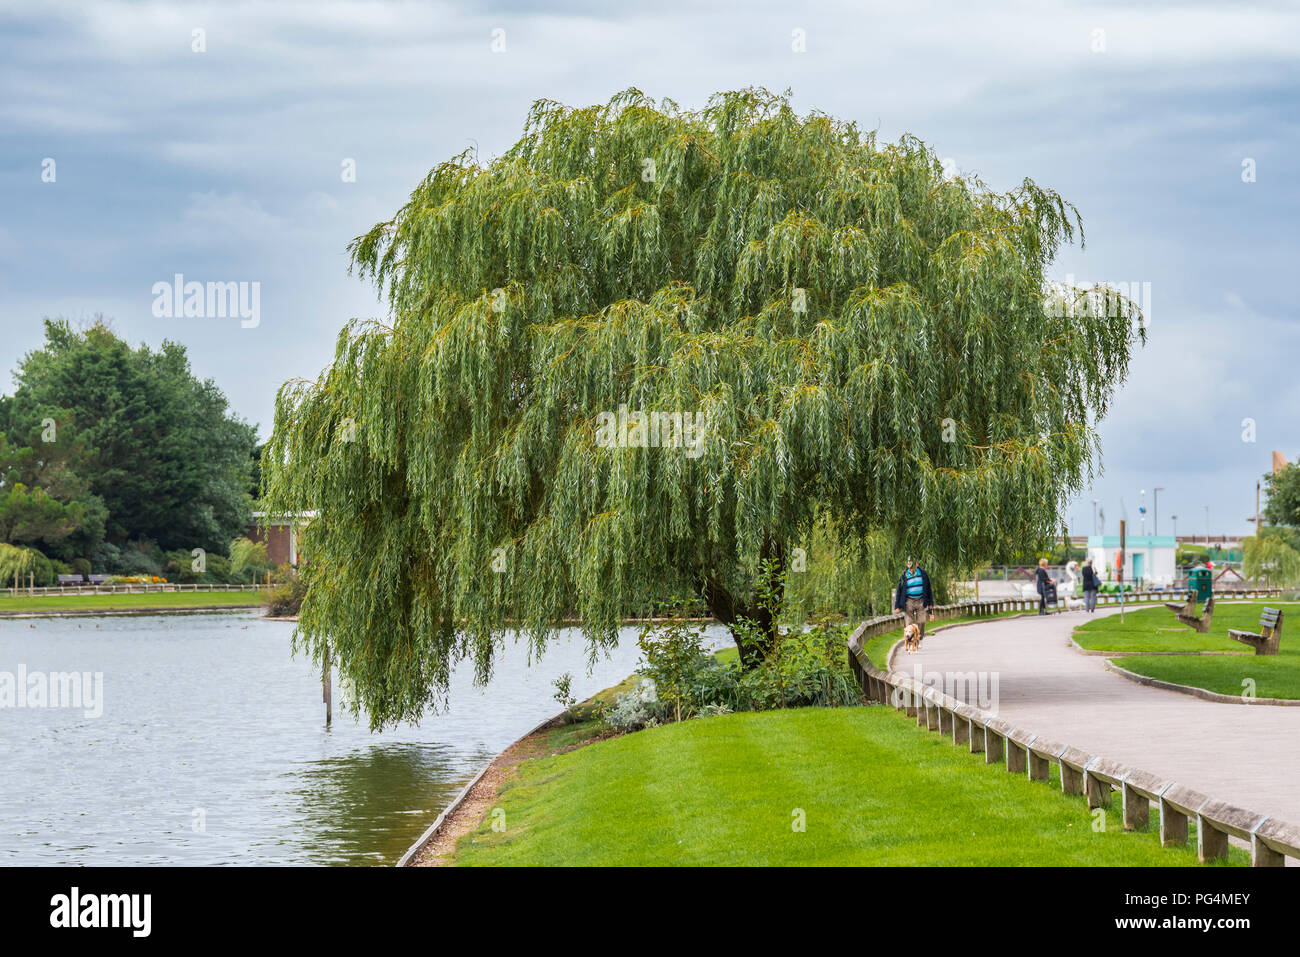 Saule pleurant (Salix babylonica) croissant en été sur le côté d'un petit lac dans un parc en été au Royaume-Uni. Banque D'Images